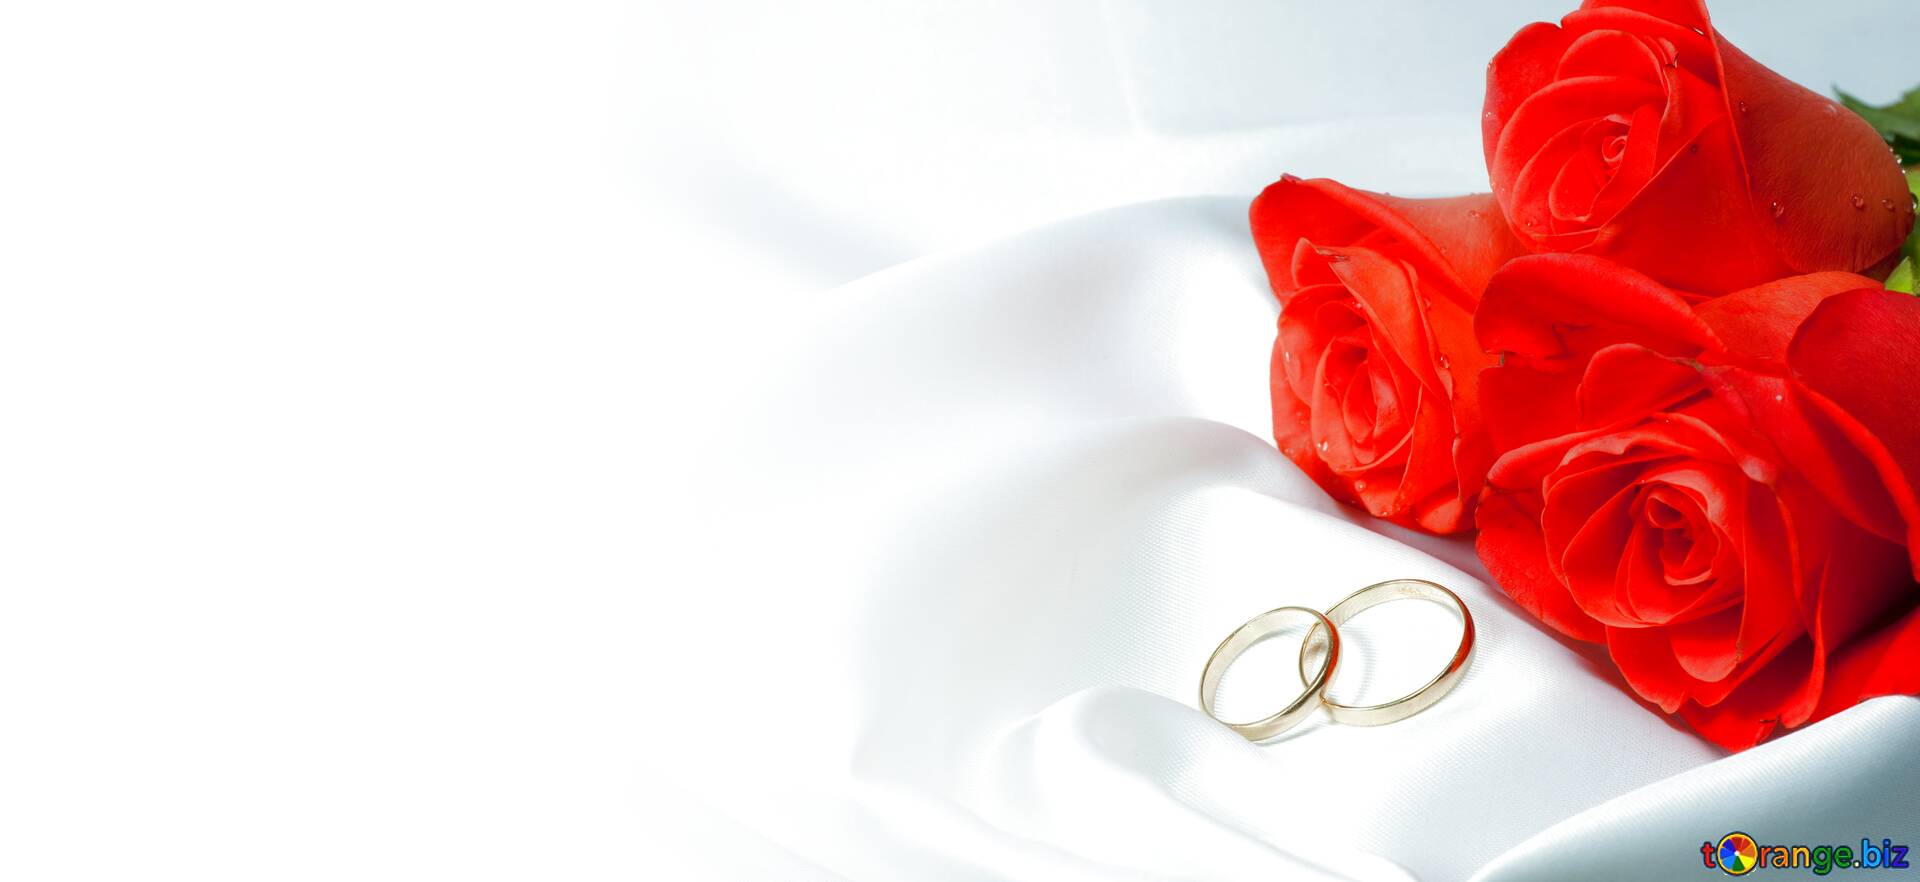 Thư mời cưới đầy màu sắc và lãng mạn sẽ khiến bạn phải bấm ngay vào bức ảnh liên quan. Hãy để tình yêu của bạn bùng nổ và tạo ra một kỷ niệm đáng nhớ với một cuộc tình lãng mạn với thư mời cưới đặc biệt.